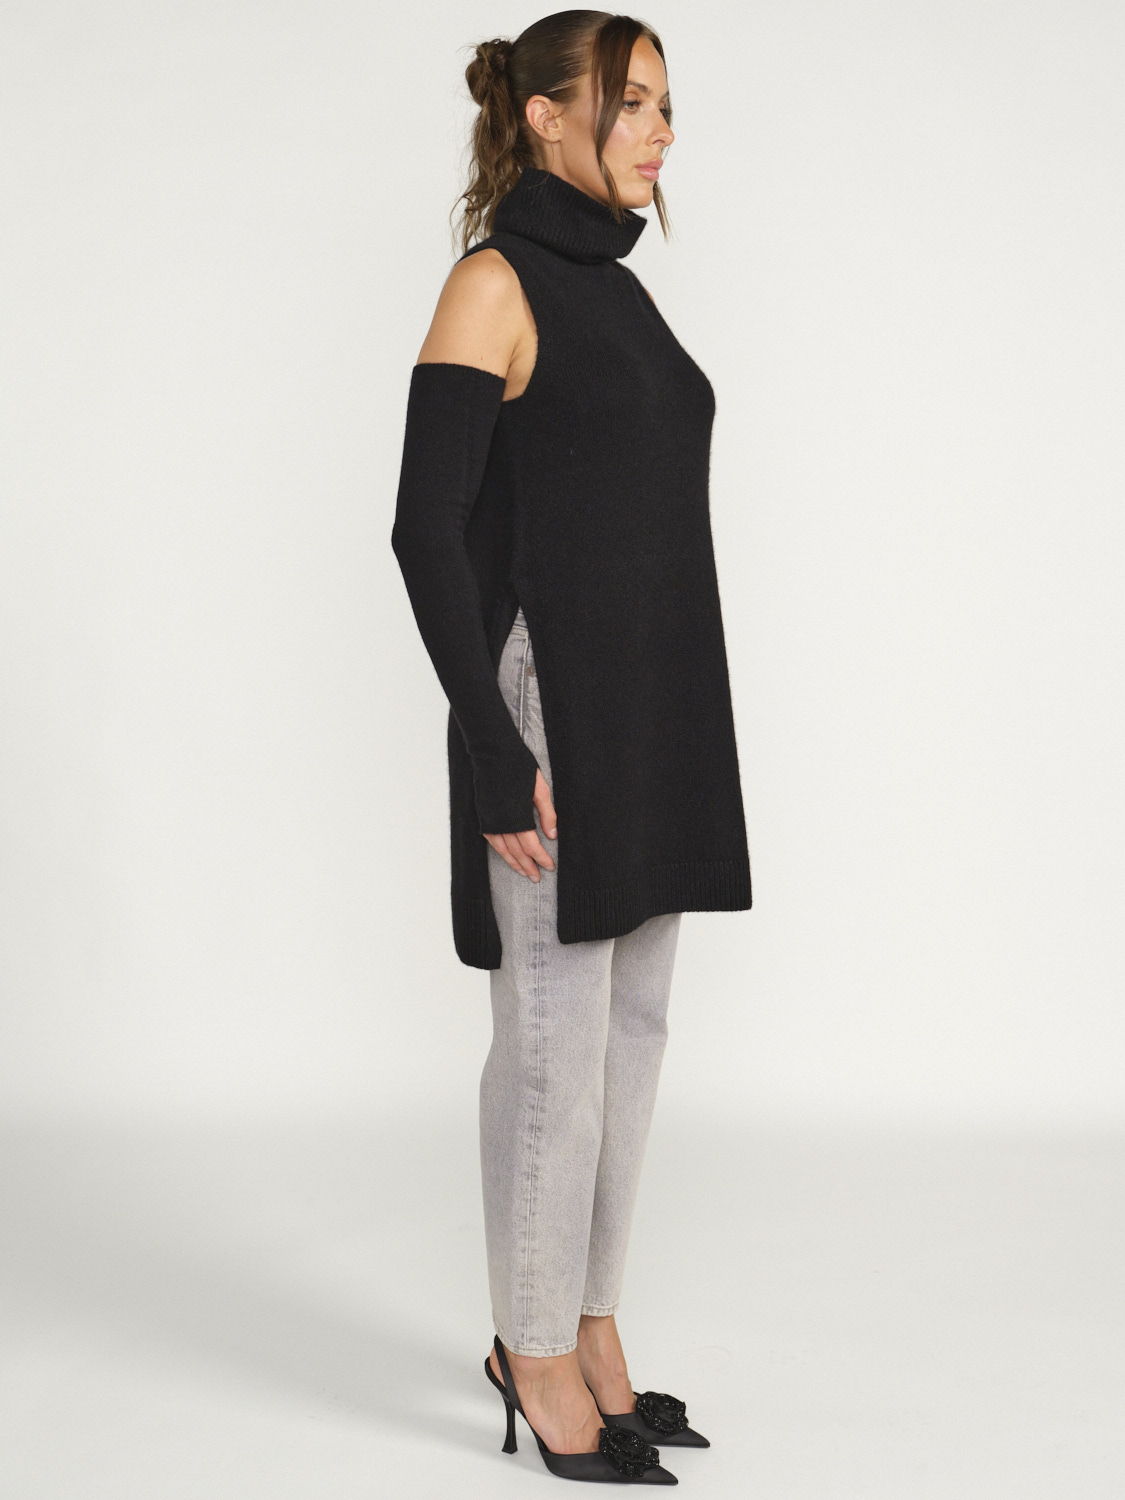 Iris von Arnim Svea - Sleeveless dress in cashmere black S